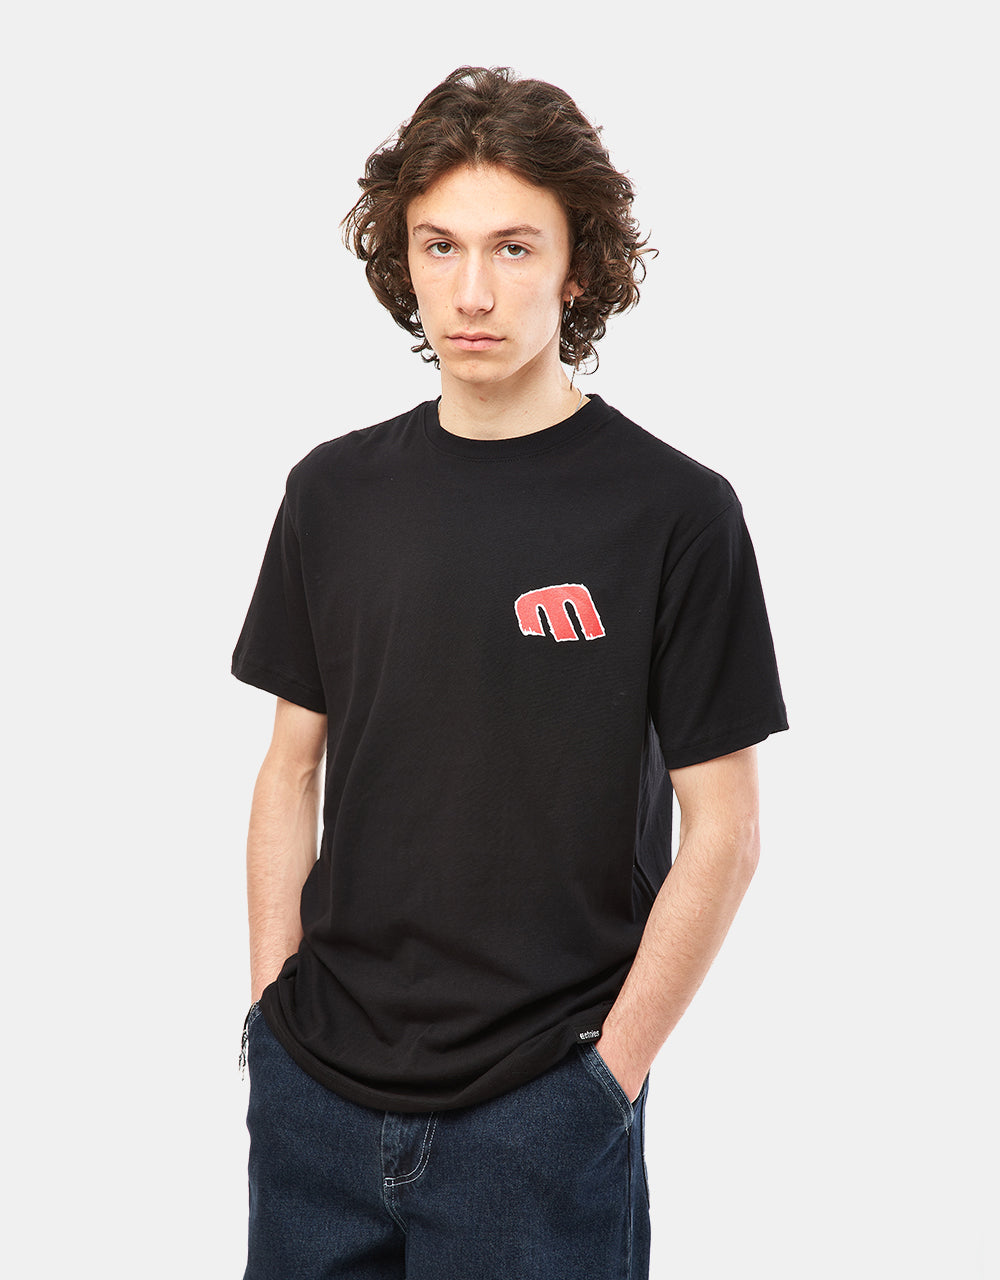 Etnies Rebel E T-Shirt - Black/Red